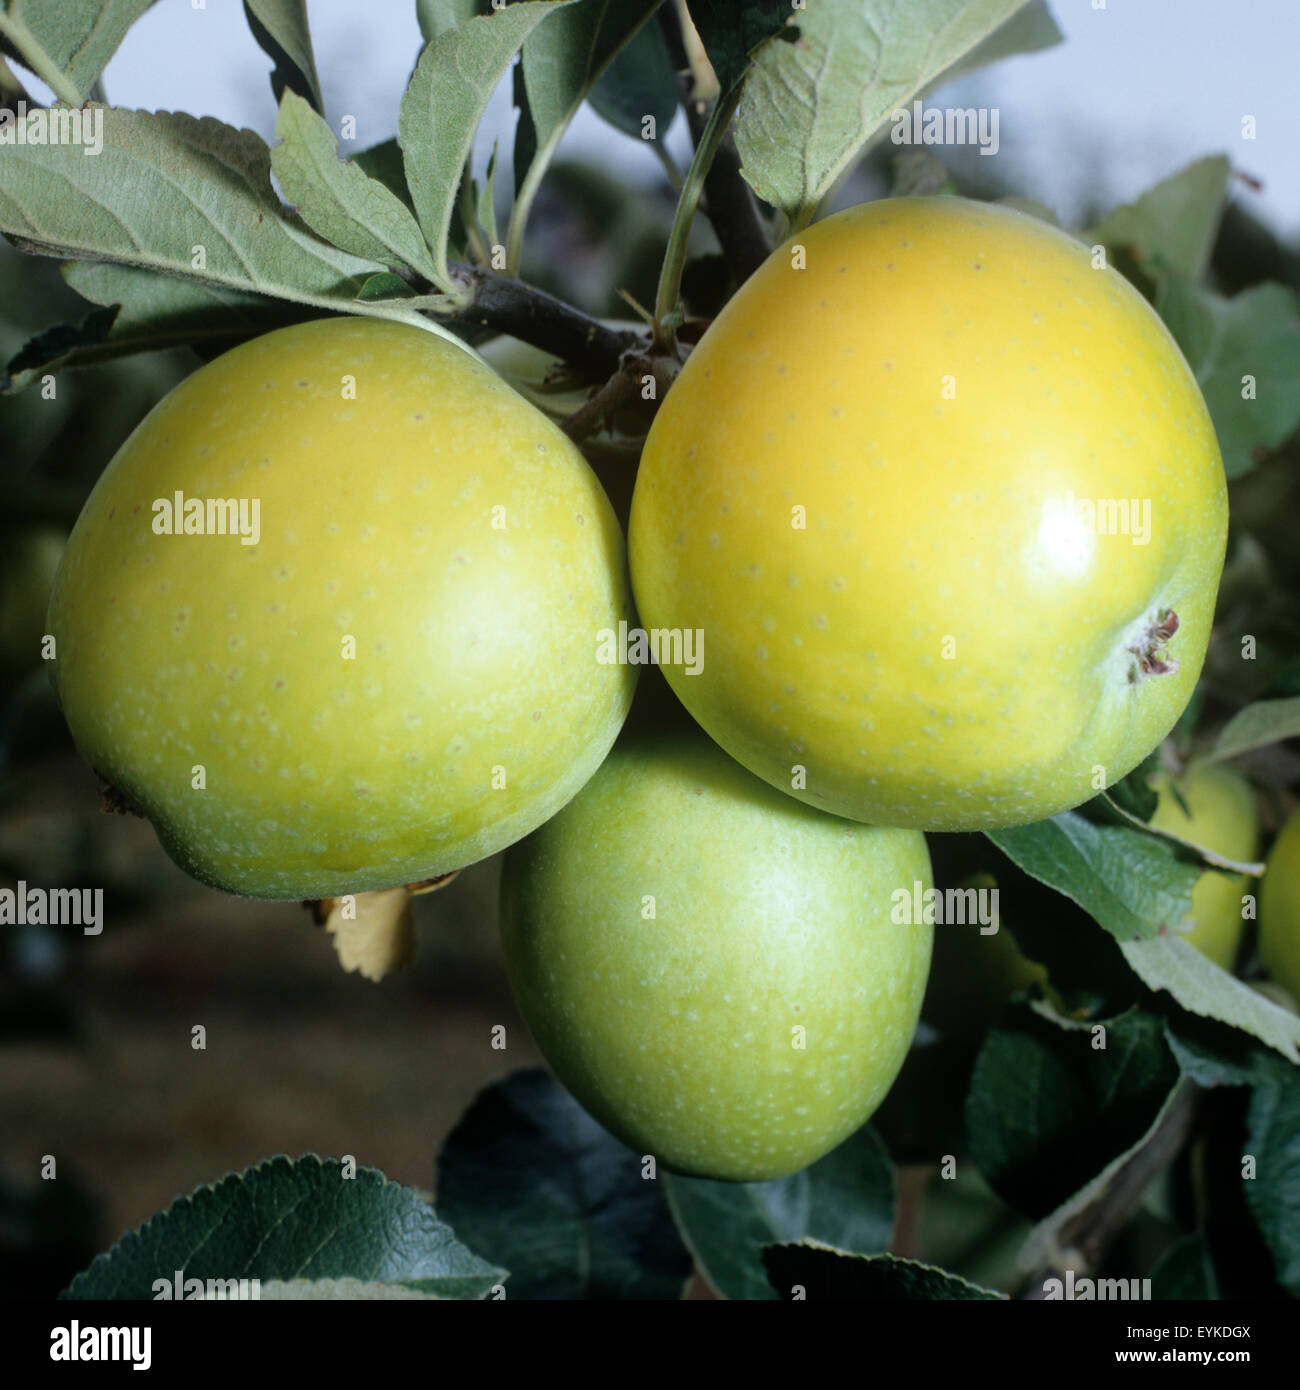 Ananasrenette; Winterapfel; Apfel; Apfelsorte, Apfel, Kernobst, Obst, Stock Photo